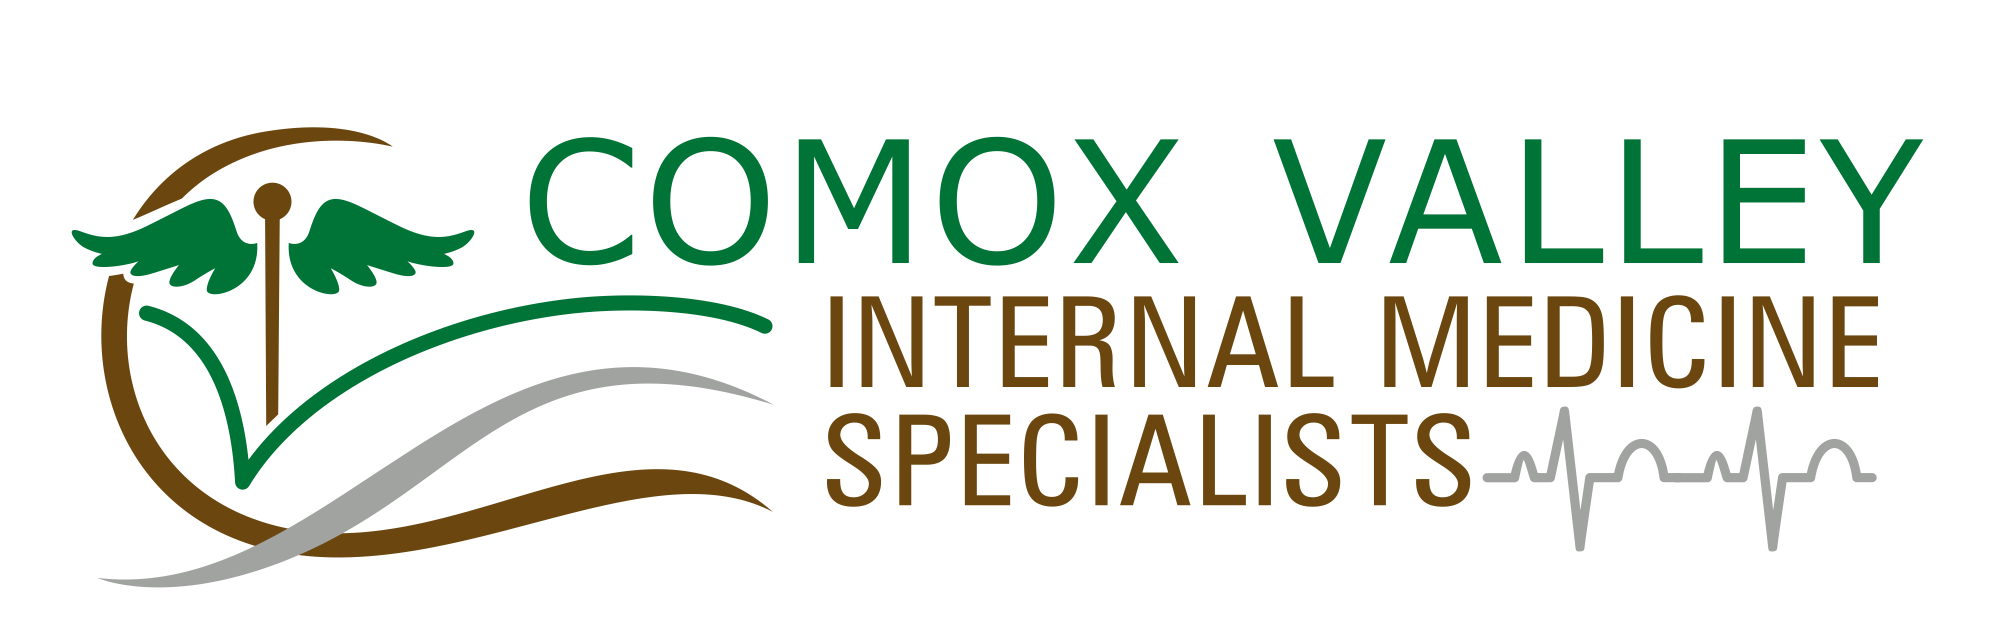 Comox Valley Internal Medicine Specialists